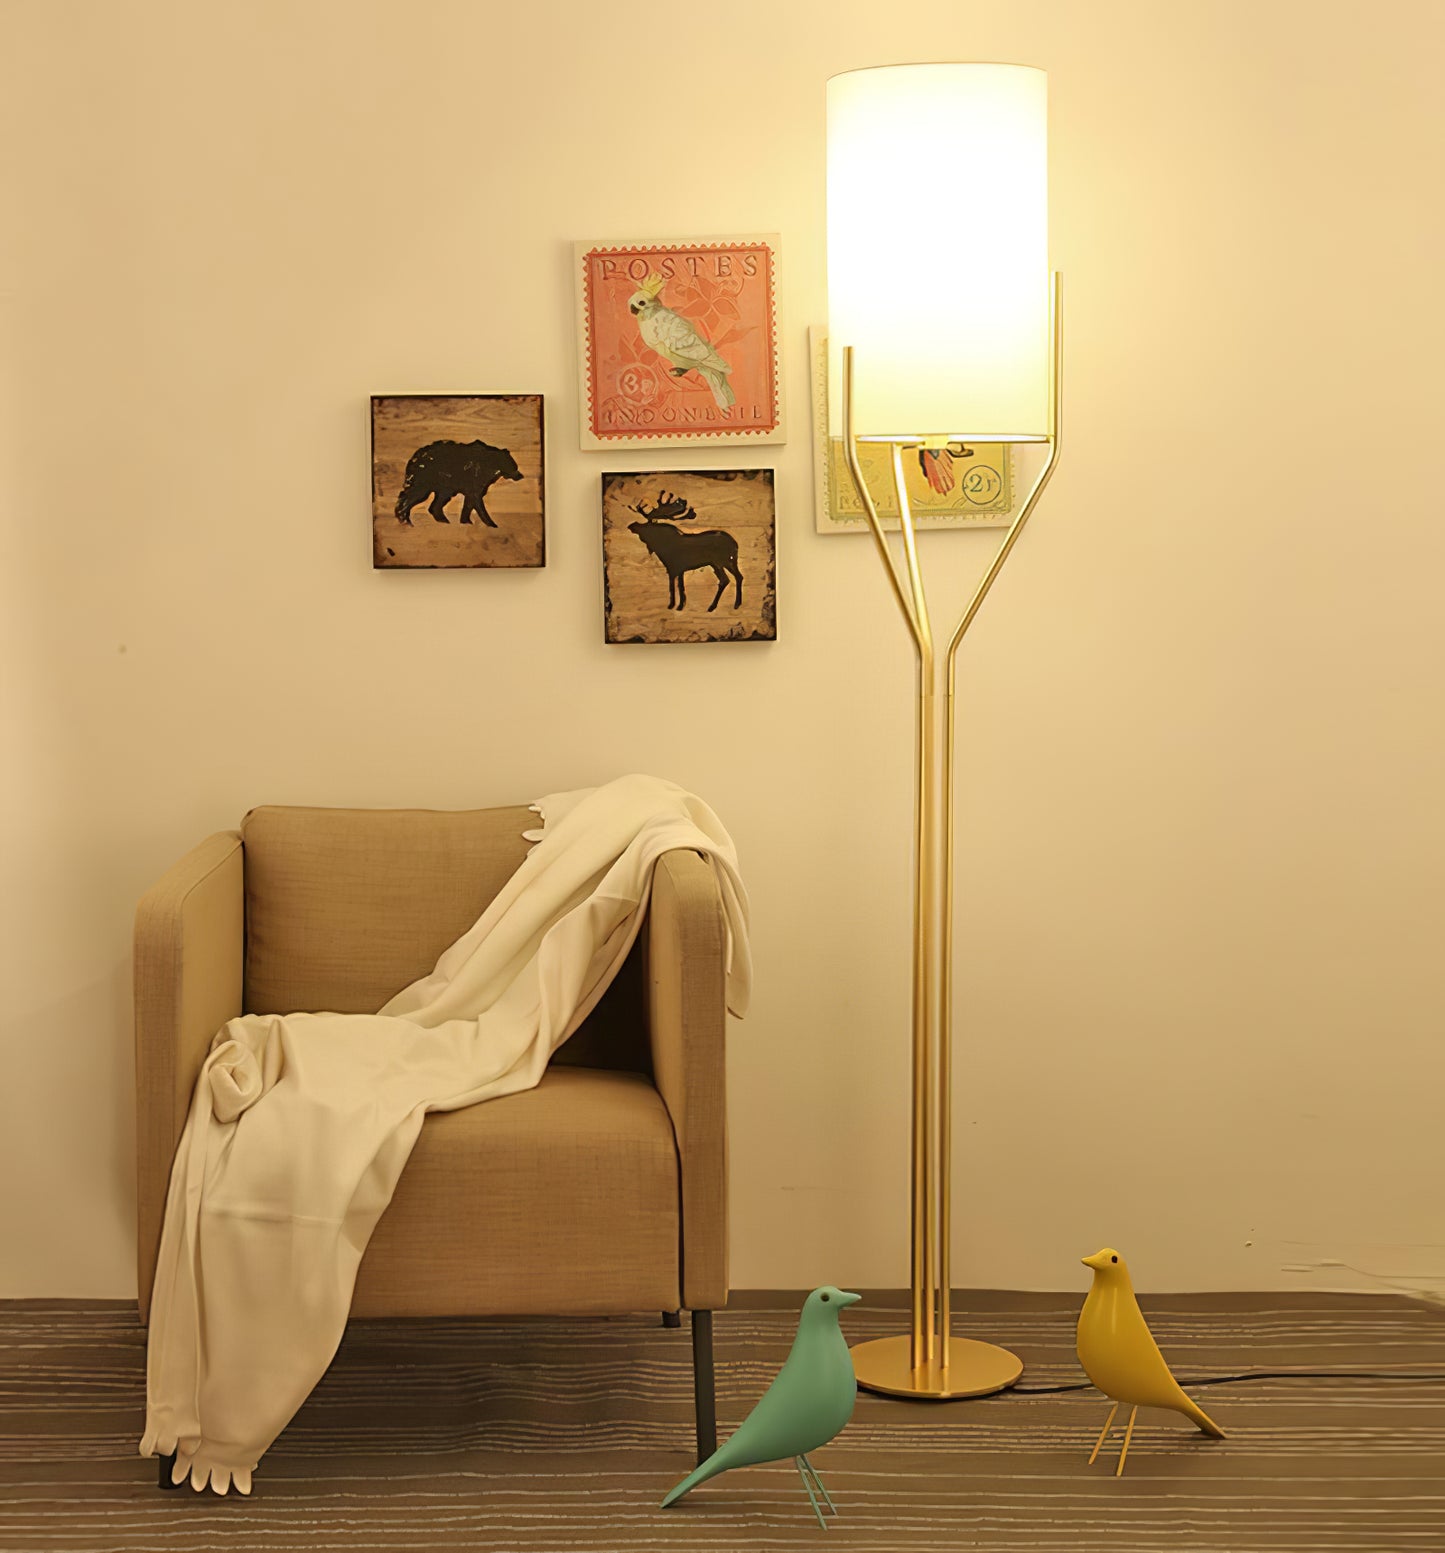 Arborescence Floor Lamp